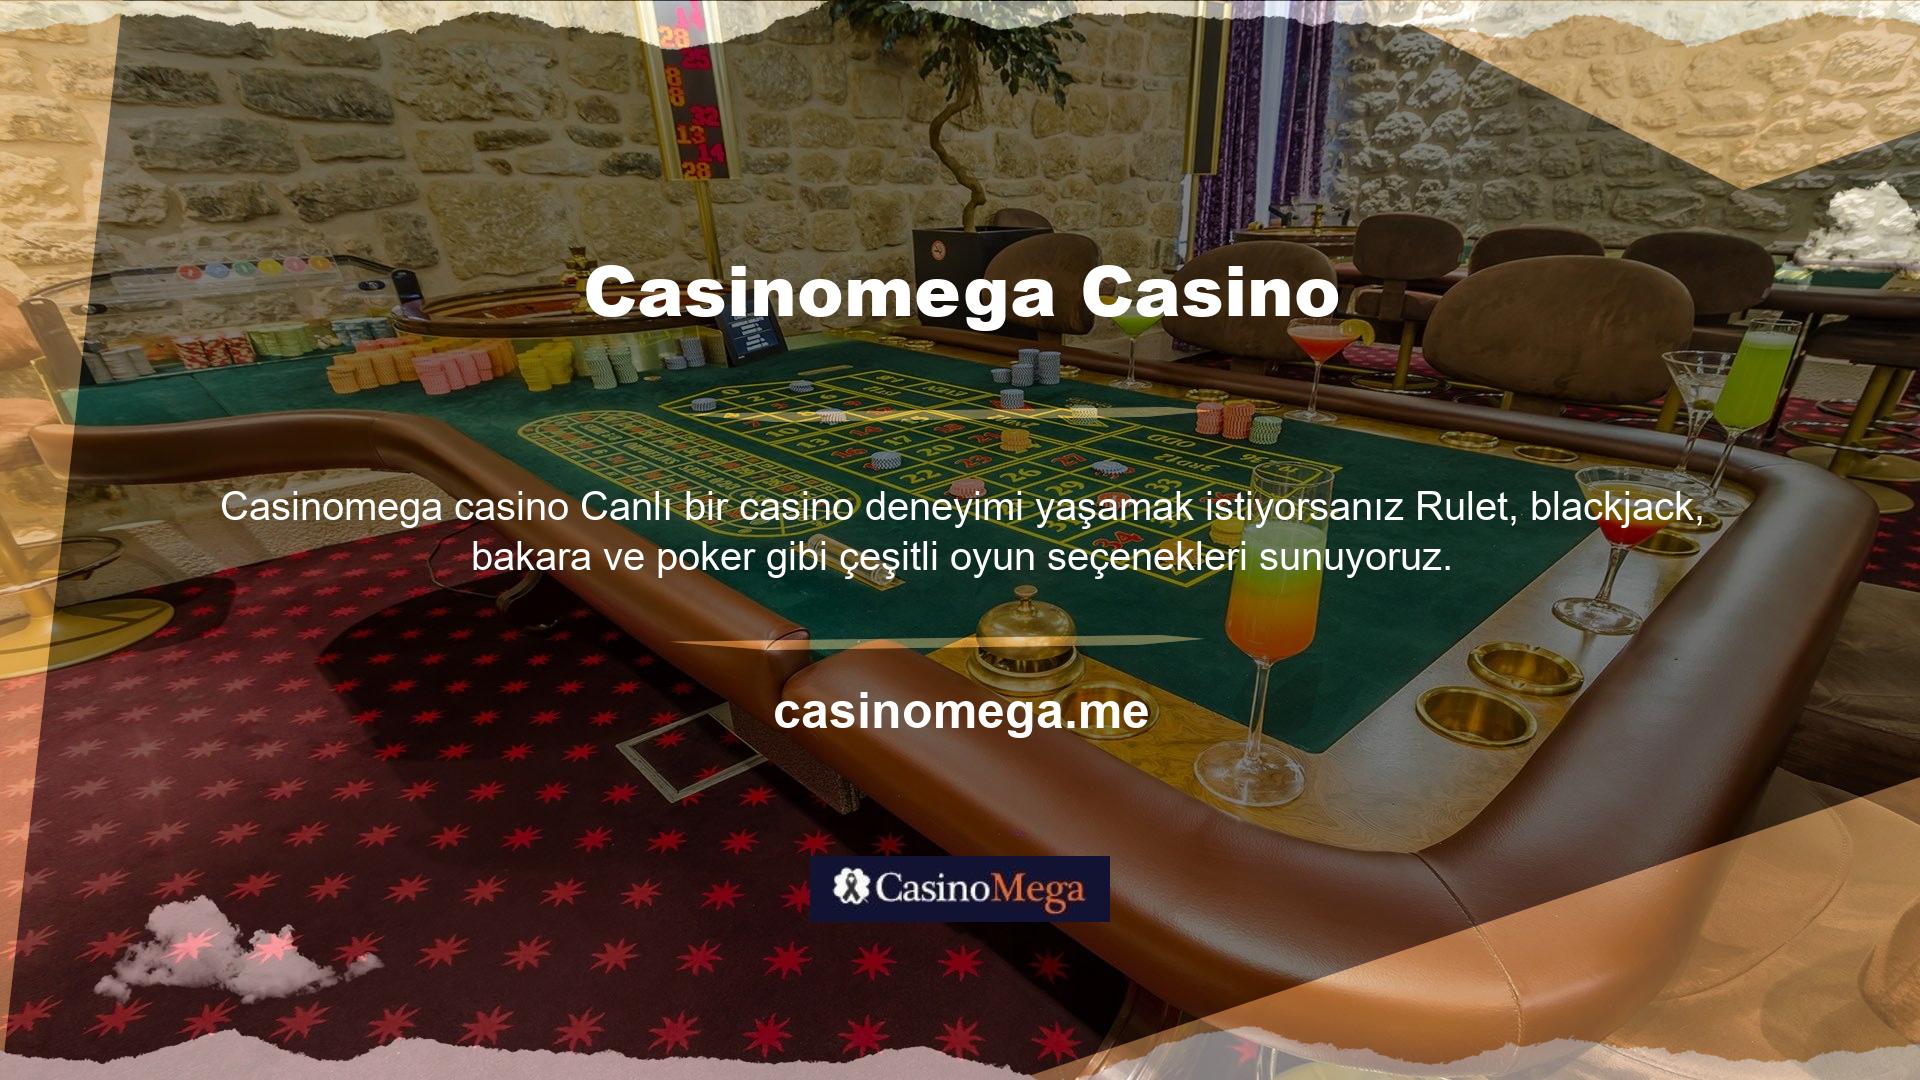 Casinomega oyun sitesi, uzun süredir online oyun sektörüne hizmet vermekte ve oyun severlere faydalı hizmetler sunmaktadır